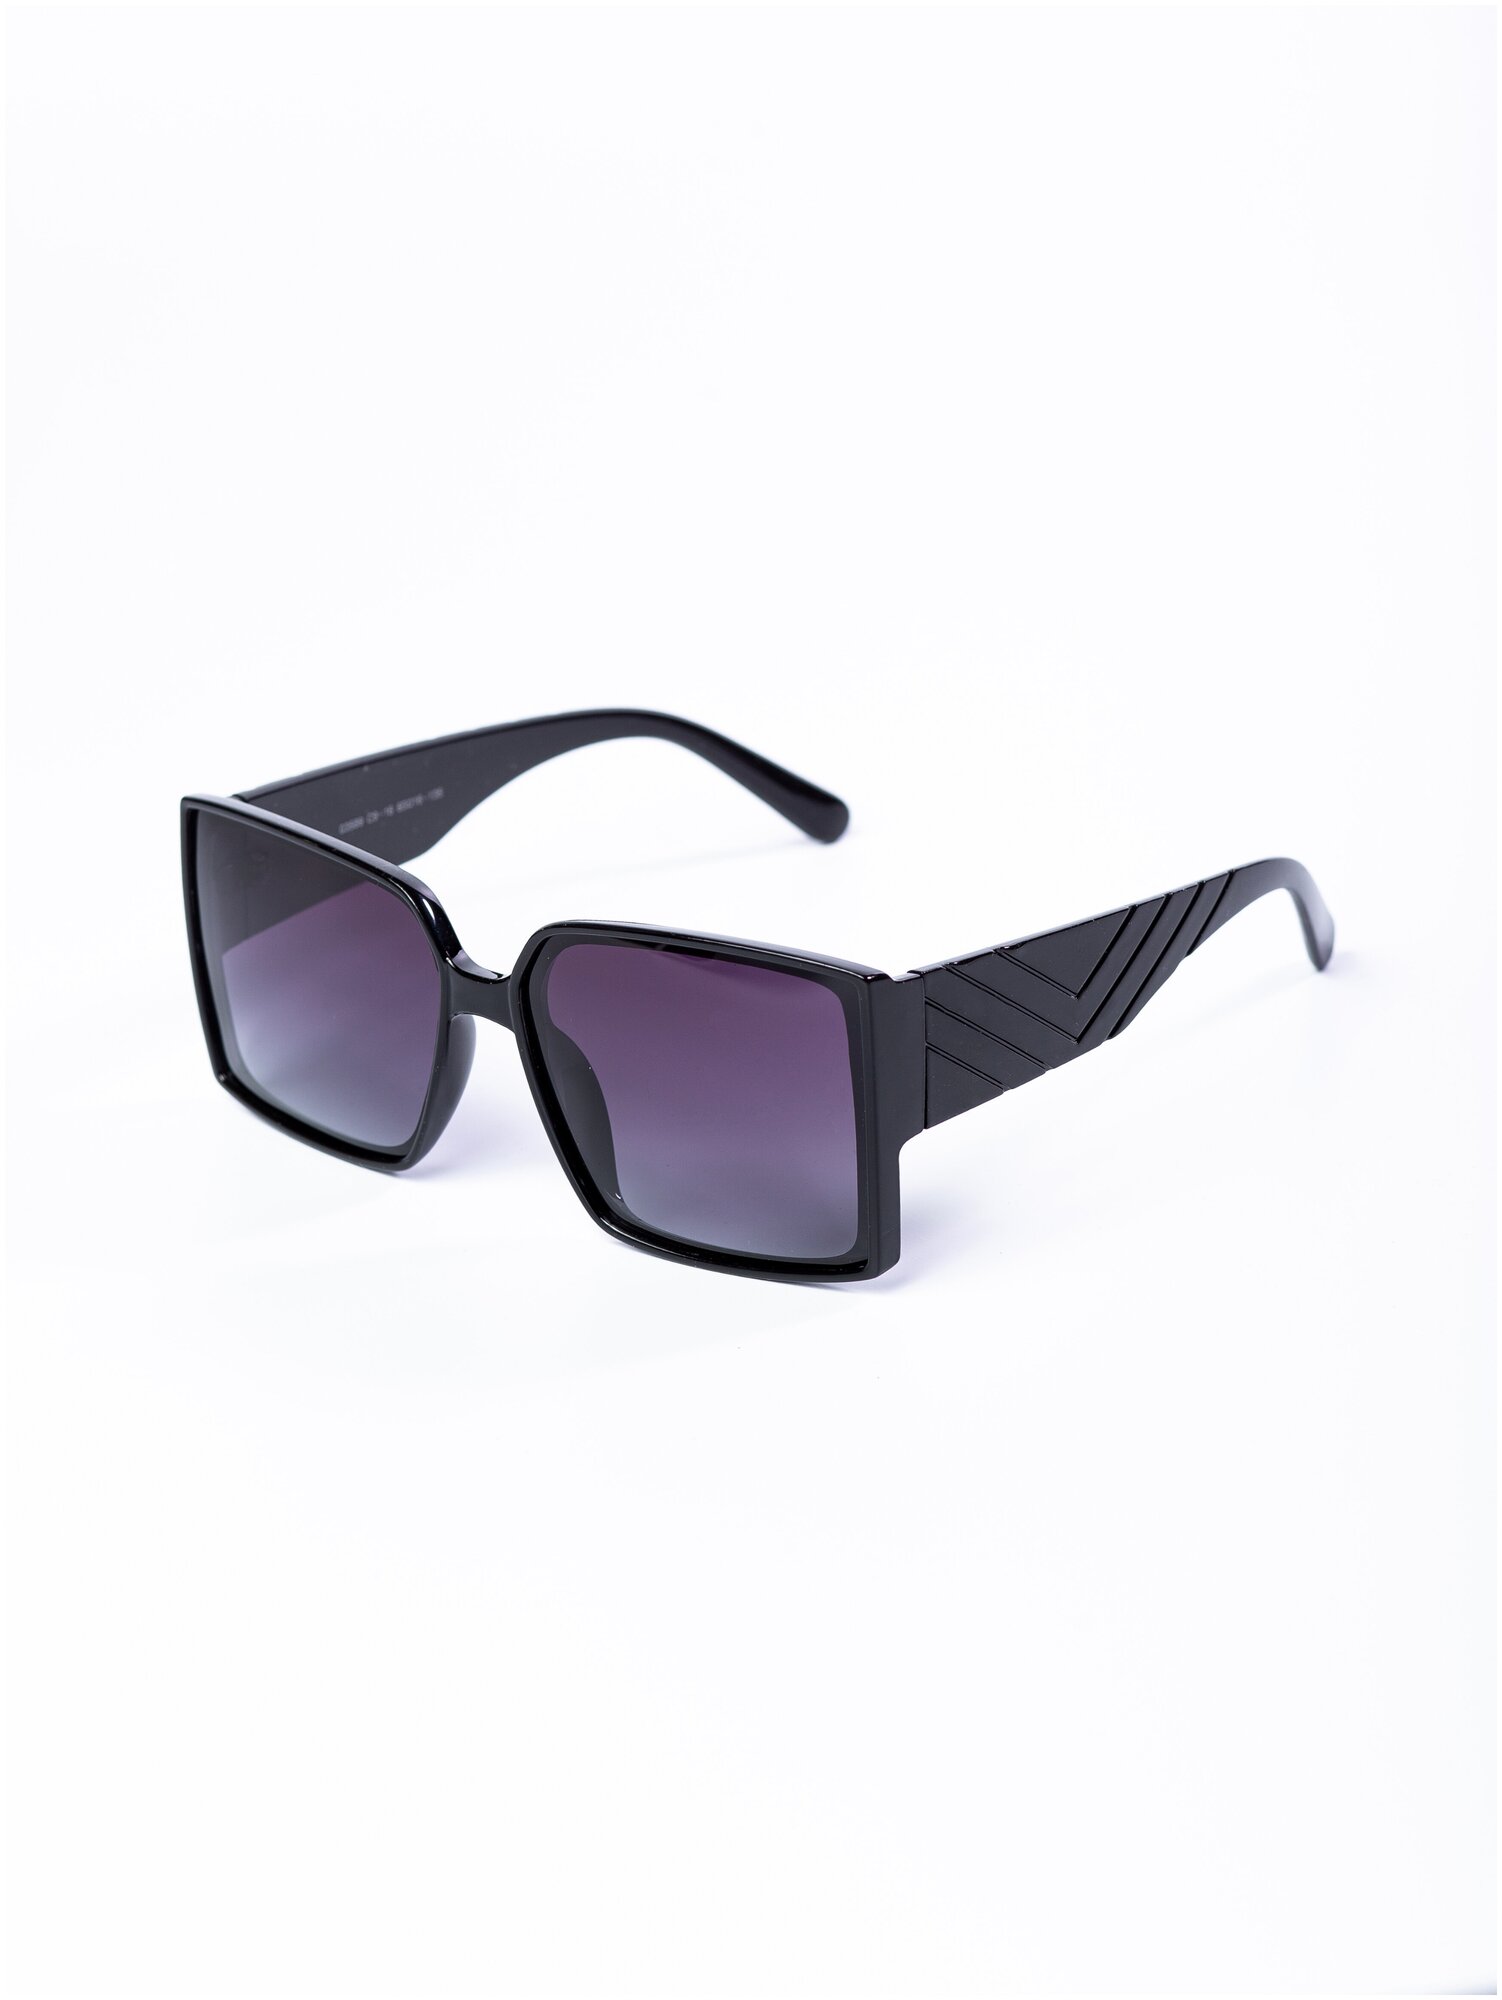 Солнцезащитные очки женские / Оправа квадратная / Стильные очки / Ультрафиолетовый фильтр / Защита UV400 / Темные очки/ 200422544